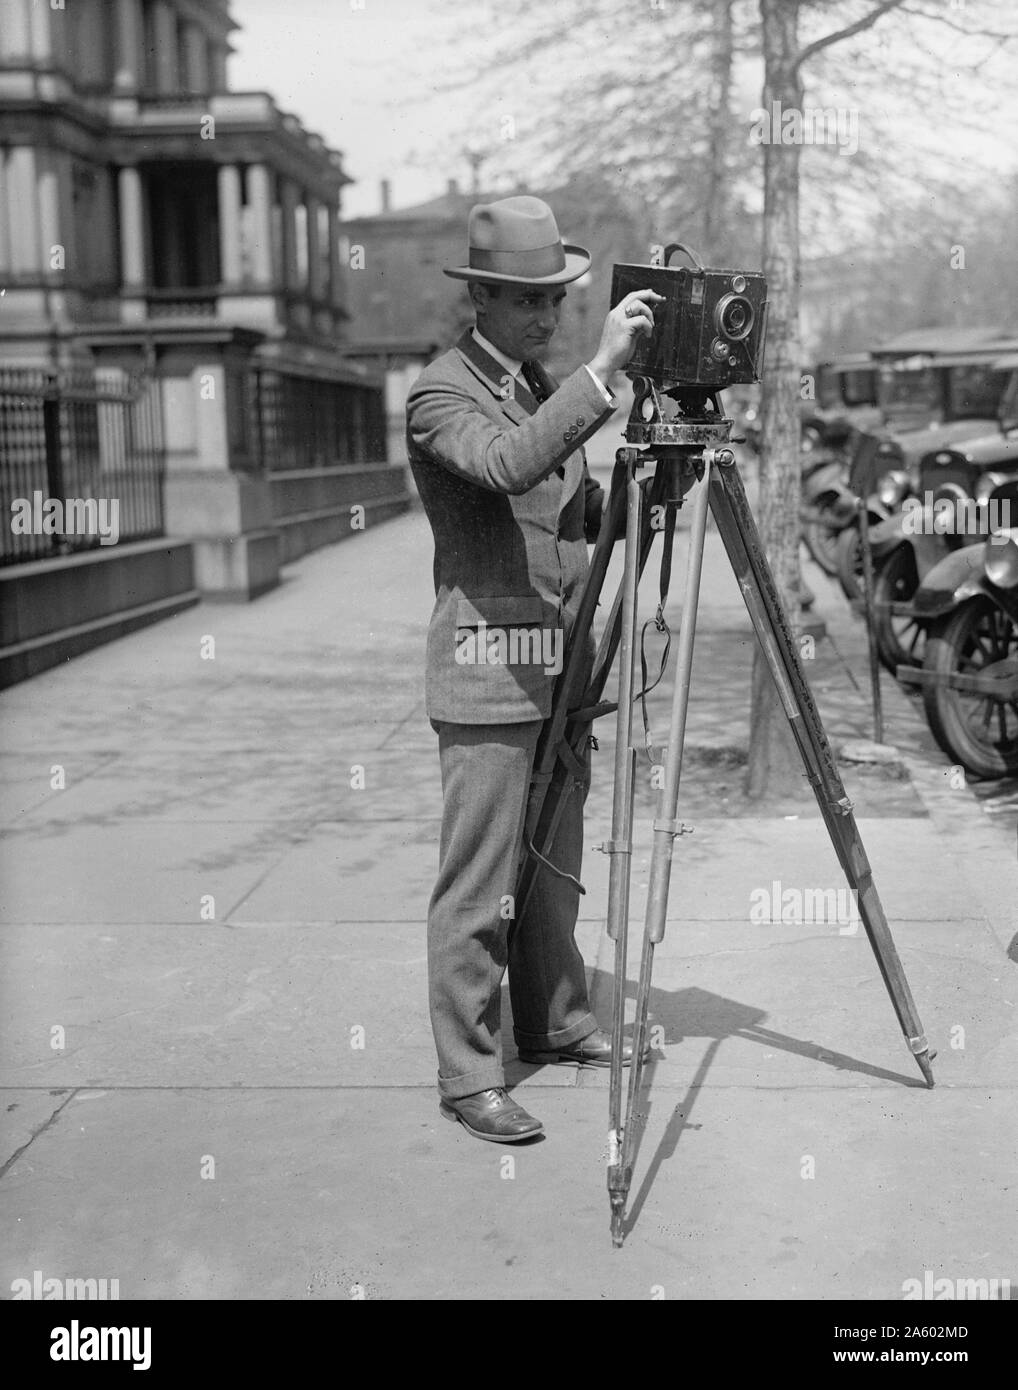 L'homme à l'aide d'une caméra sur un trépied, peut-être un ou Debrie Parvo 'L' appareil photo. Circa 1917 Banque D'Images